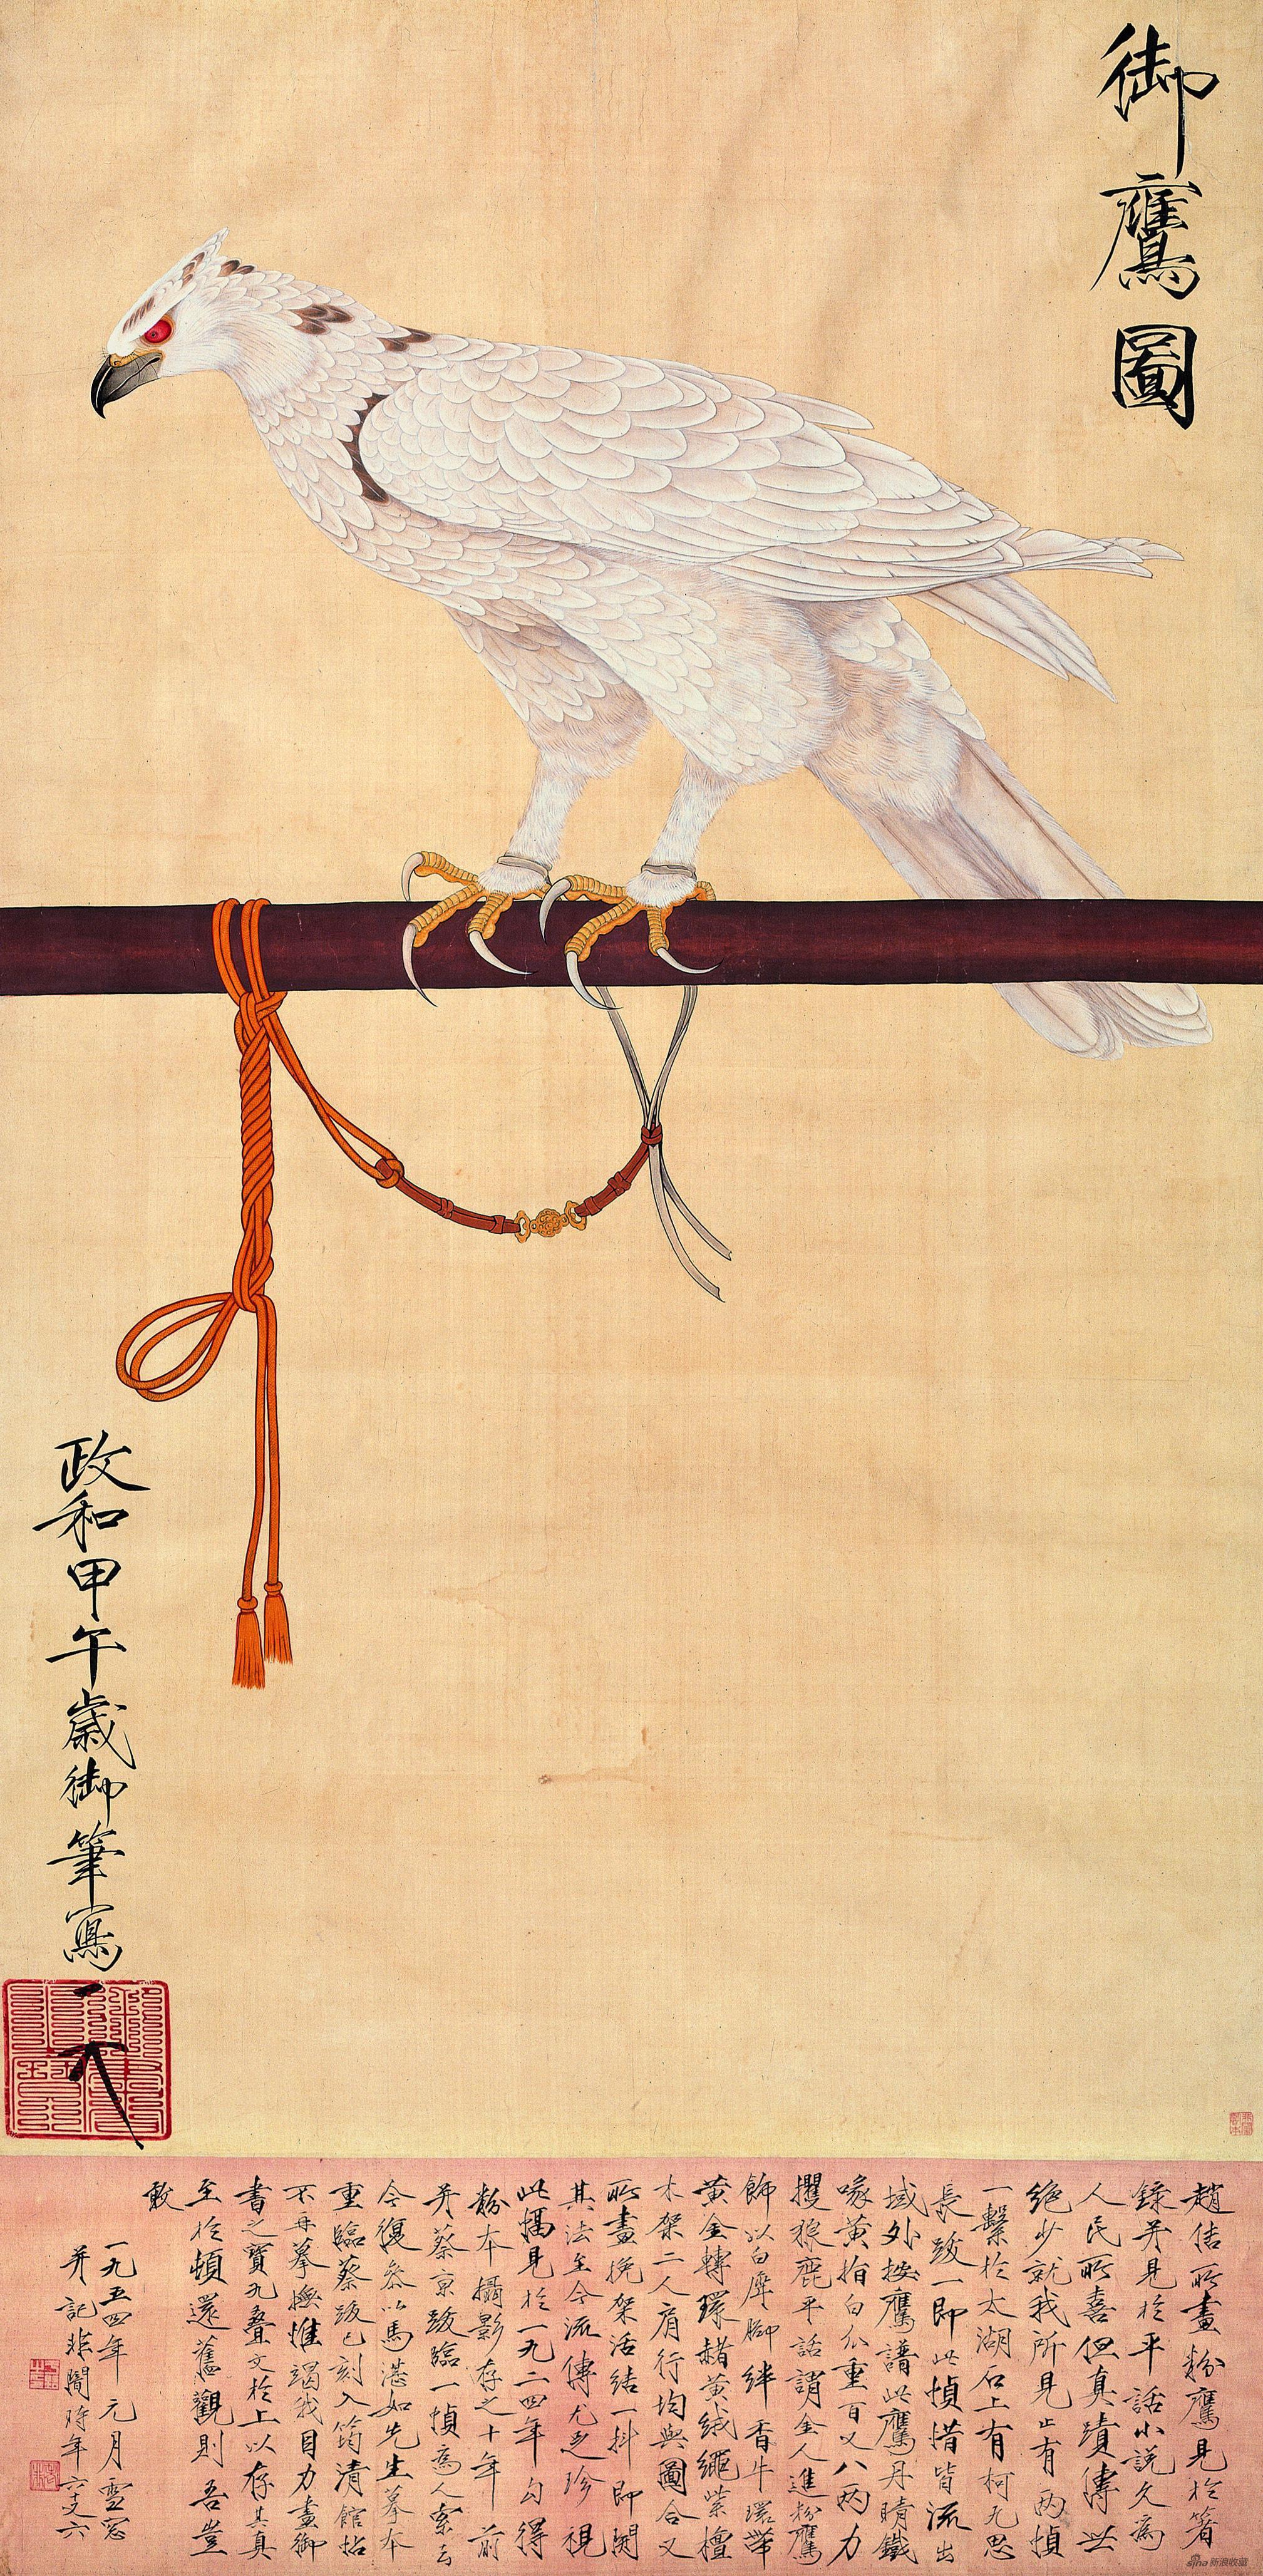 御鹰图 于非闇 164cm×80cm 1954年 北京画院藏